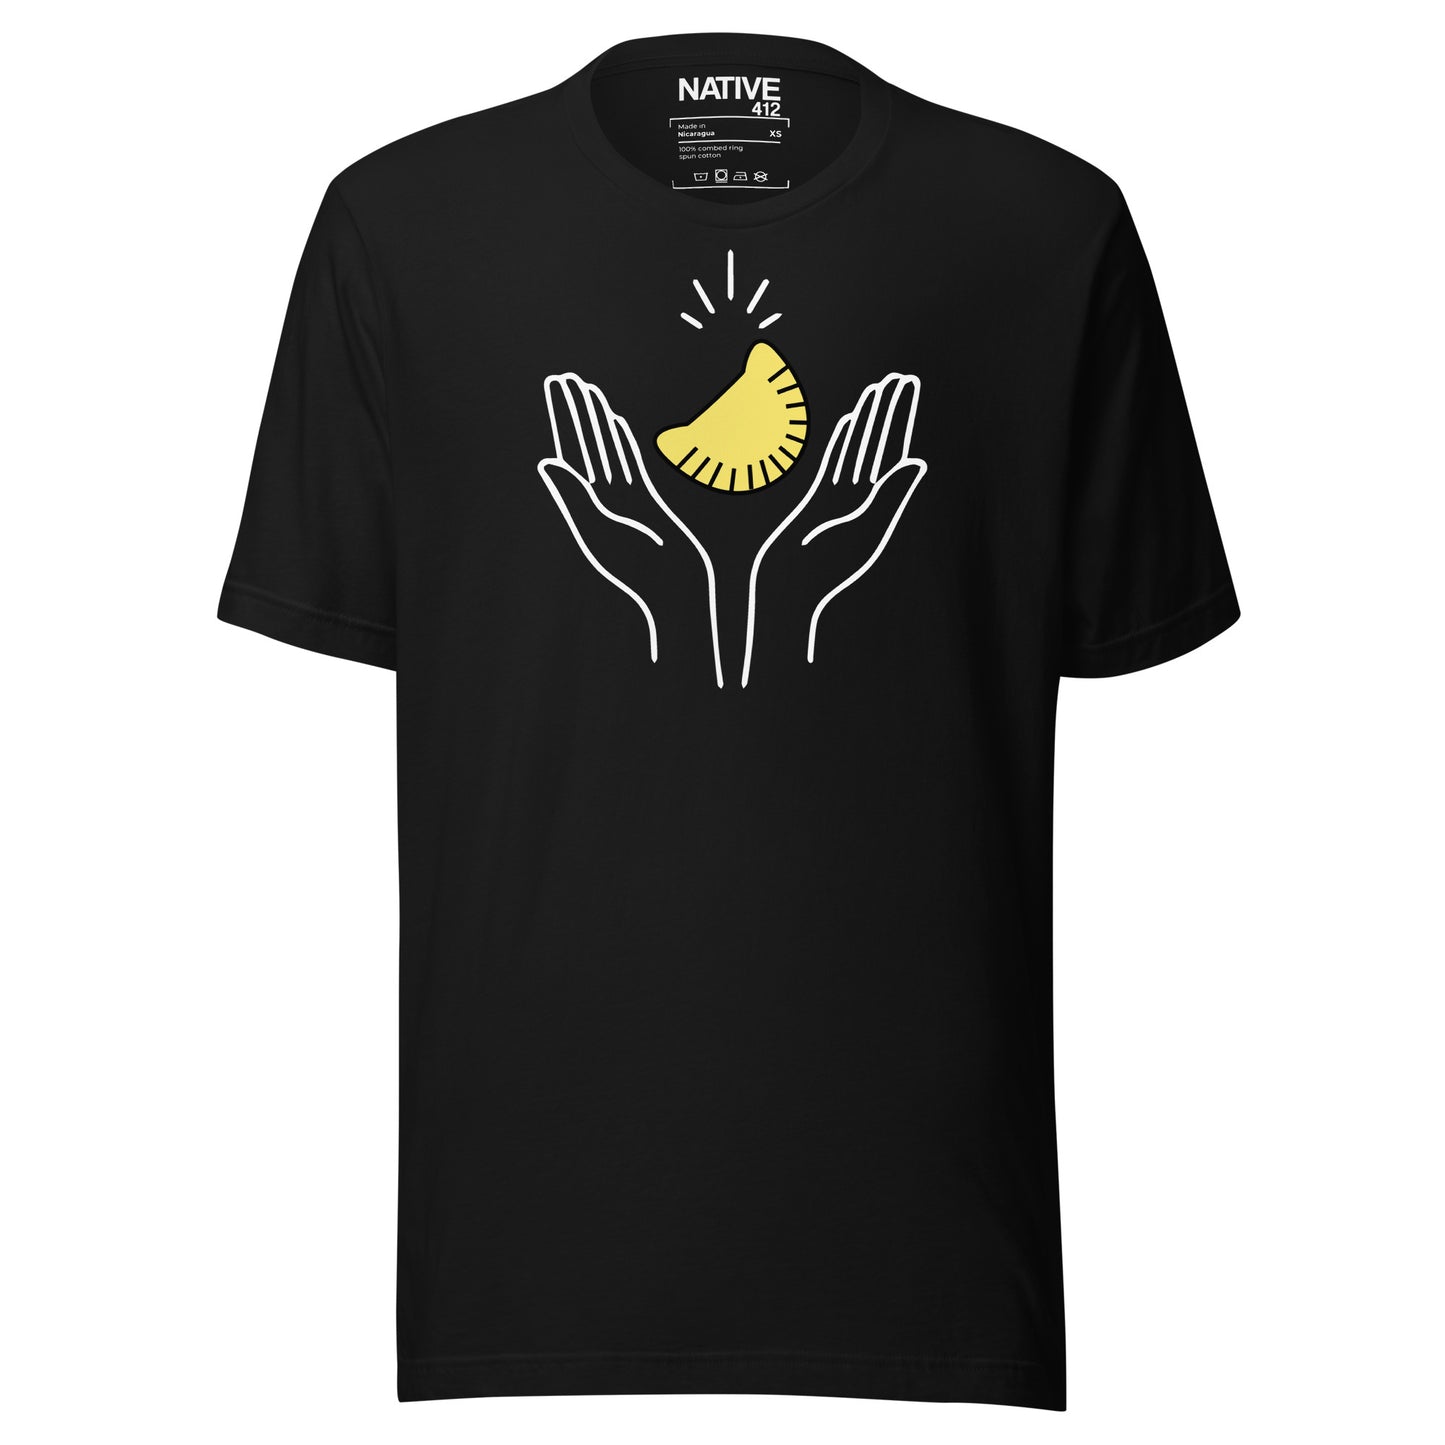 Praising Pierogi Black Unisex t-shirt